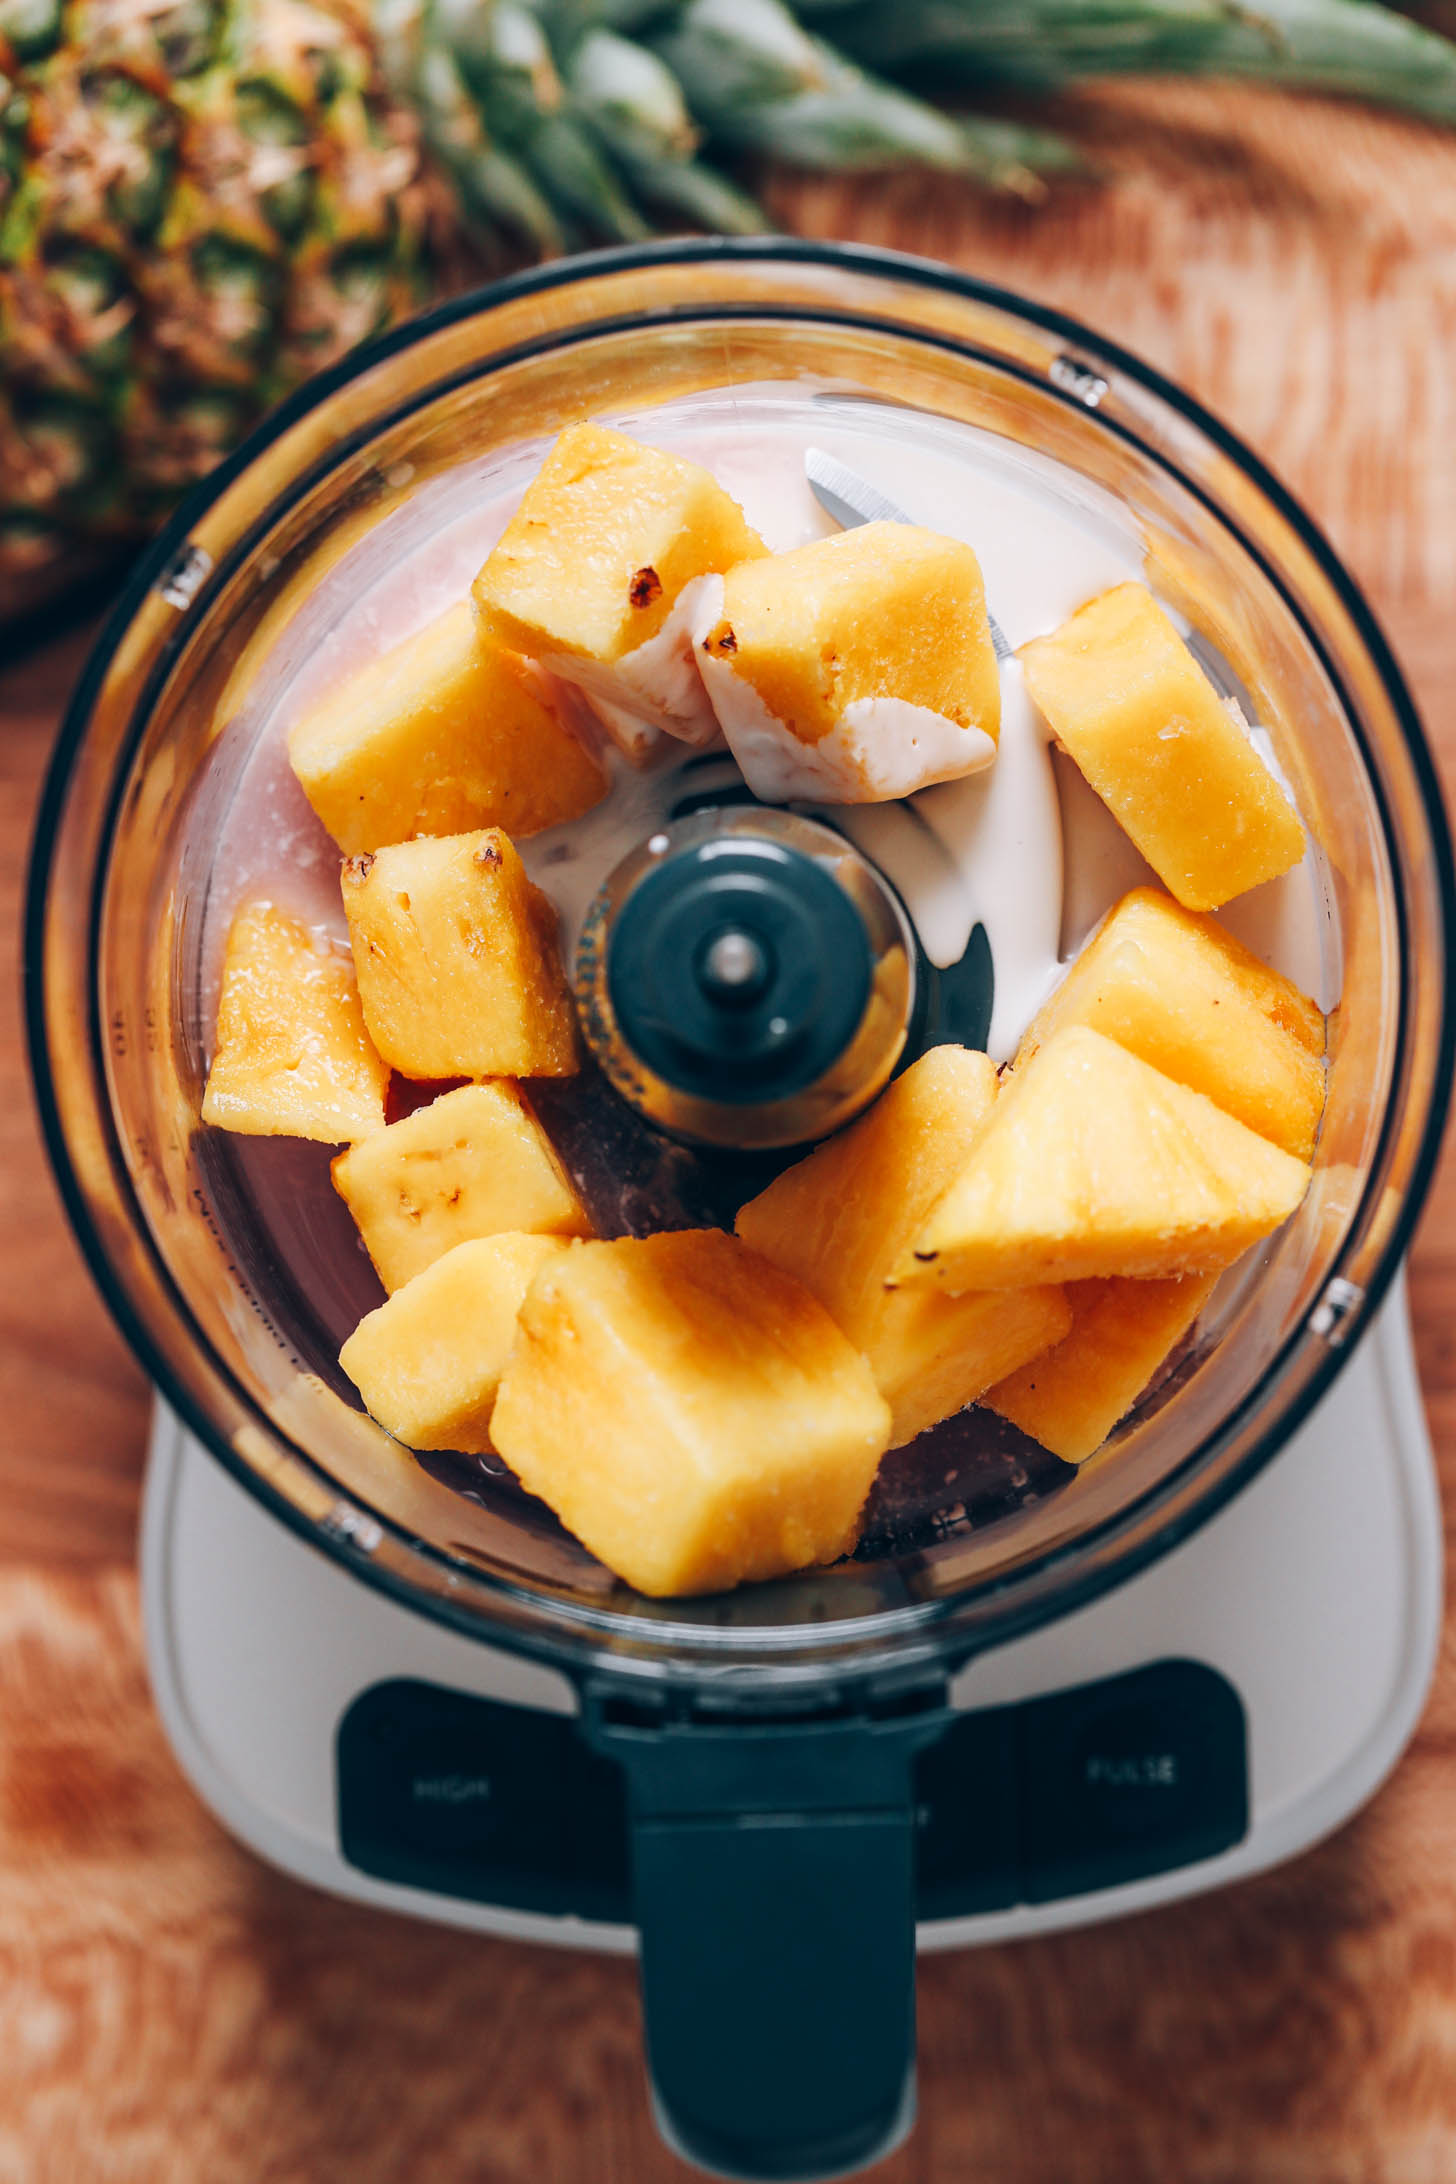 Bir mutfak robotunda ananas parçaları, hindistancevizi kreması ve hindistancevizi suyu